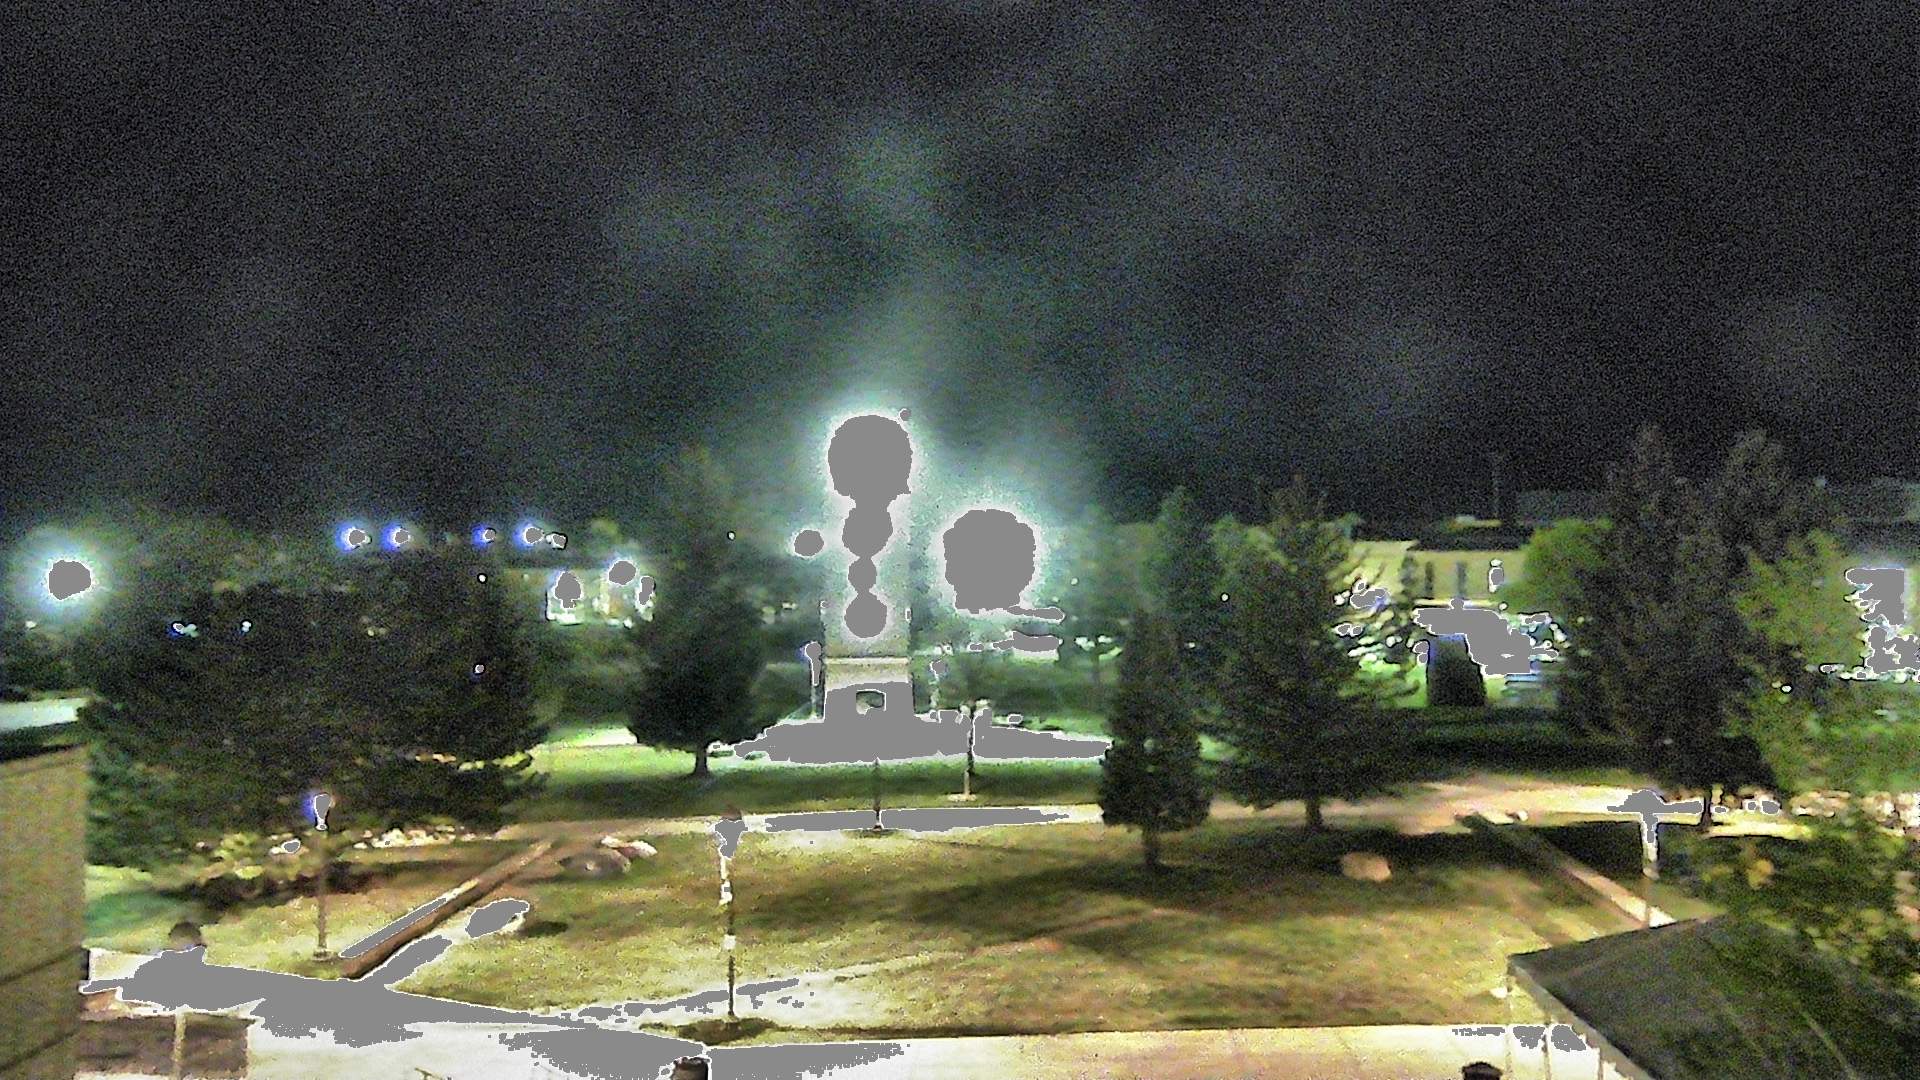 Fort Lewis College webcam